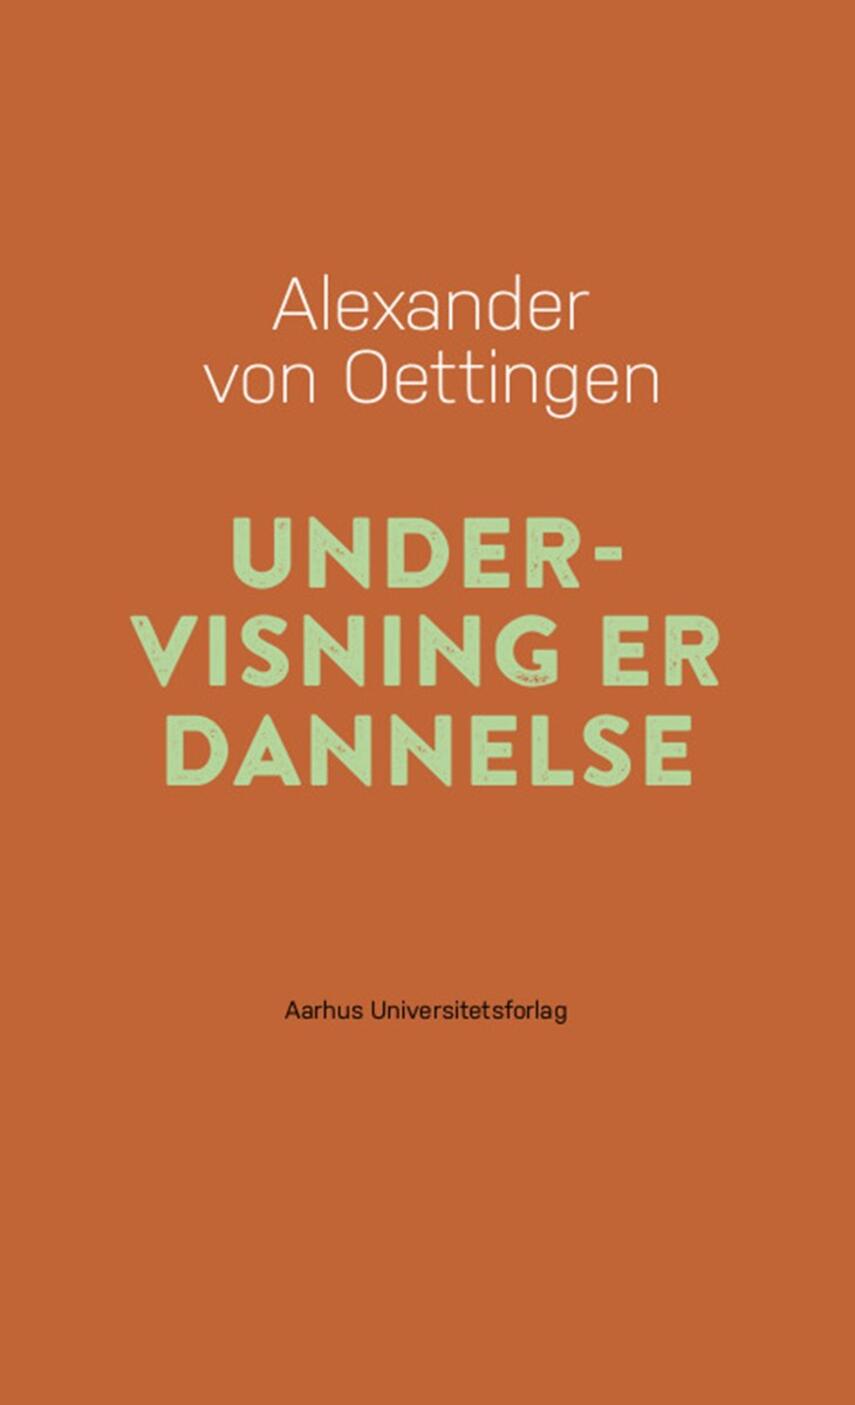 Alexander von Oettingen: Undervisning er dannelse